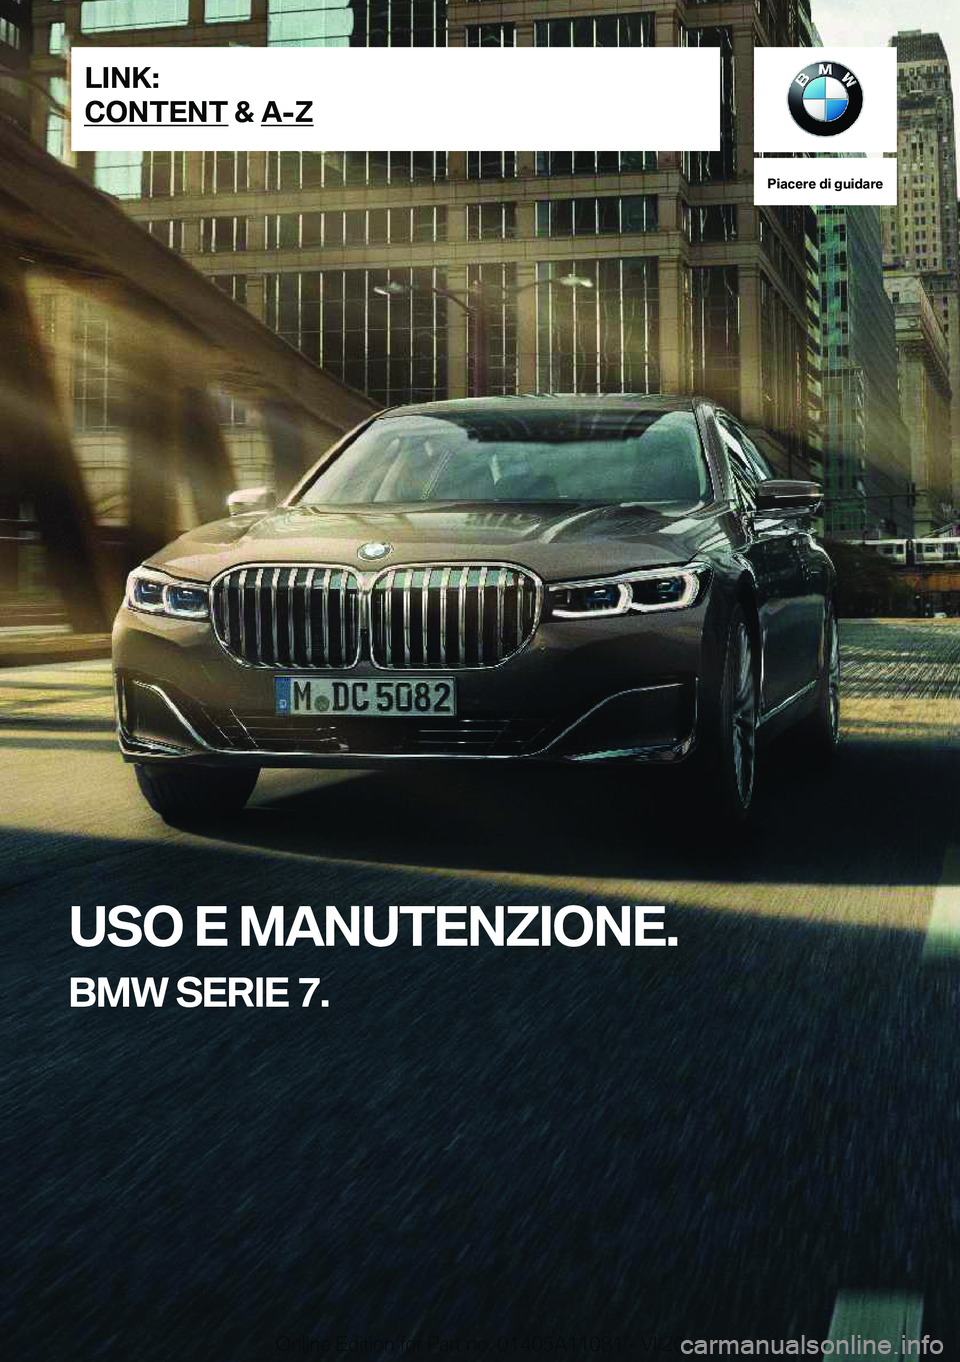 BMW 7 SERIES 2021  Libretti Di Uso E manutenzione (in Italian) �P�i�a�c�e�r�e��d�i��g�u�i�d�a�r�e
�U�S�O��E��M�A�N�U�T�E�N�Z�I�O�N�E�.
�B�M�W��S�E�R�I�E��7�.�L�I�N�K�:
�C�O�N�T�E�N�T��&��A�-�Z�O�n�l�i�n�e��E�d�i�t�i�o�n��f�o�r��P�a�r�t��n�o�.��0�1�4�